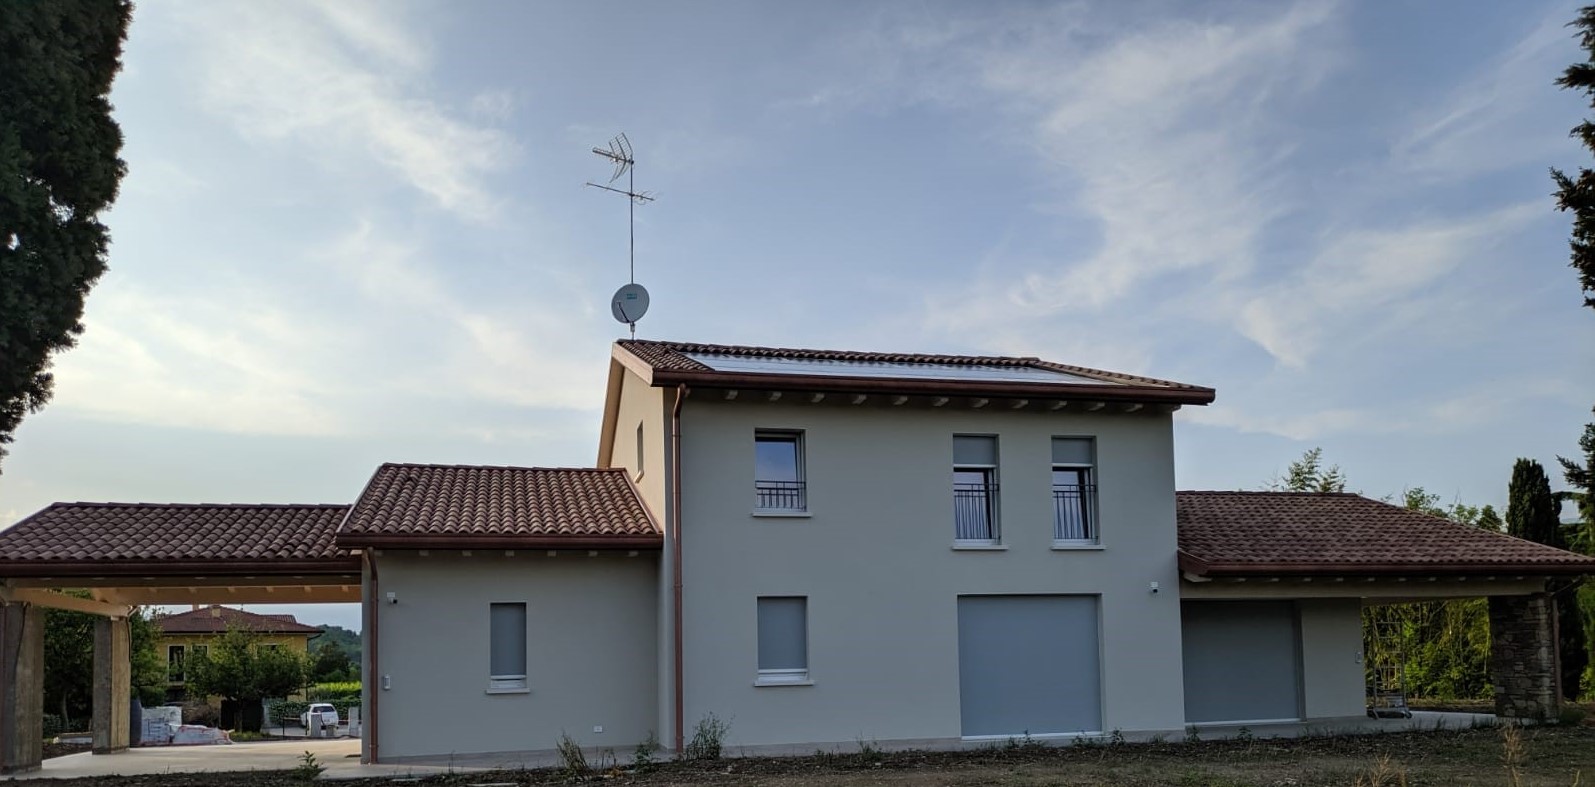 Fotovoltaico ad alta efficienza | abitazione privata | San Fior (TV)